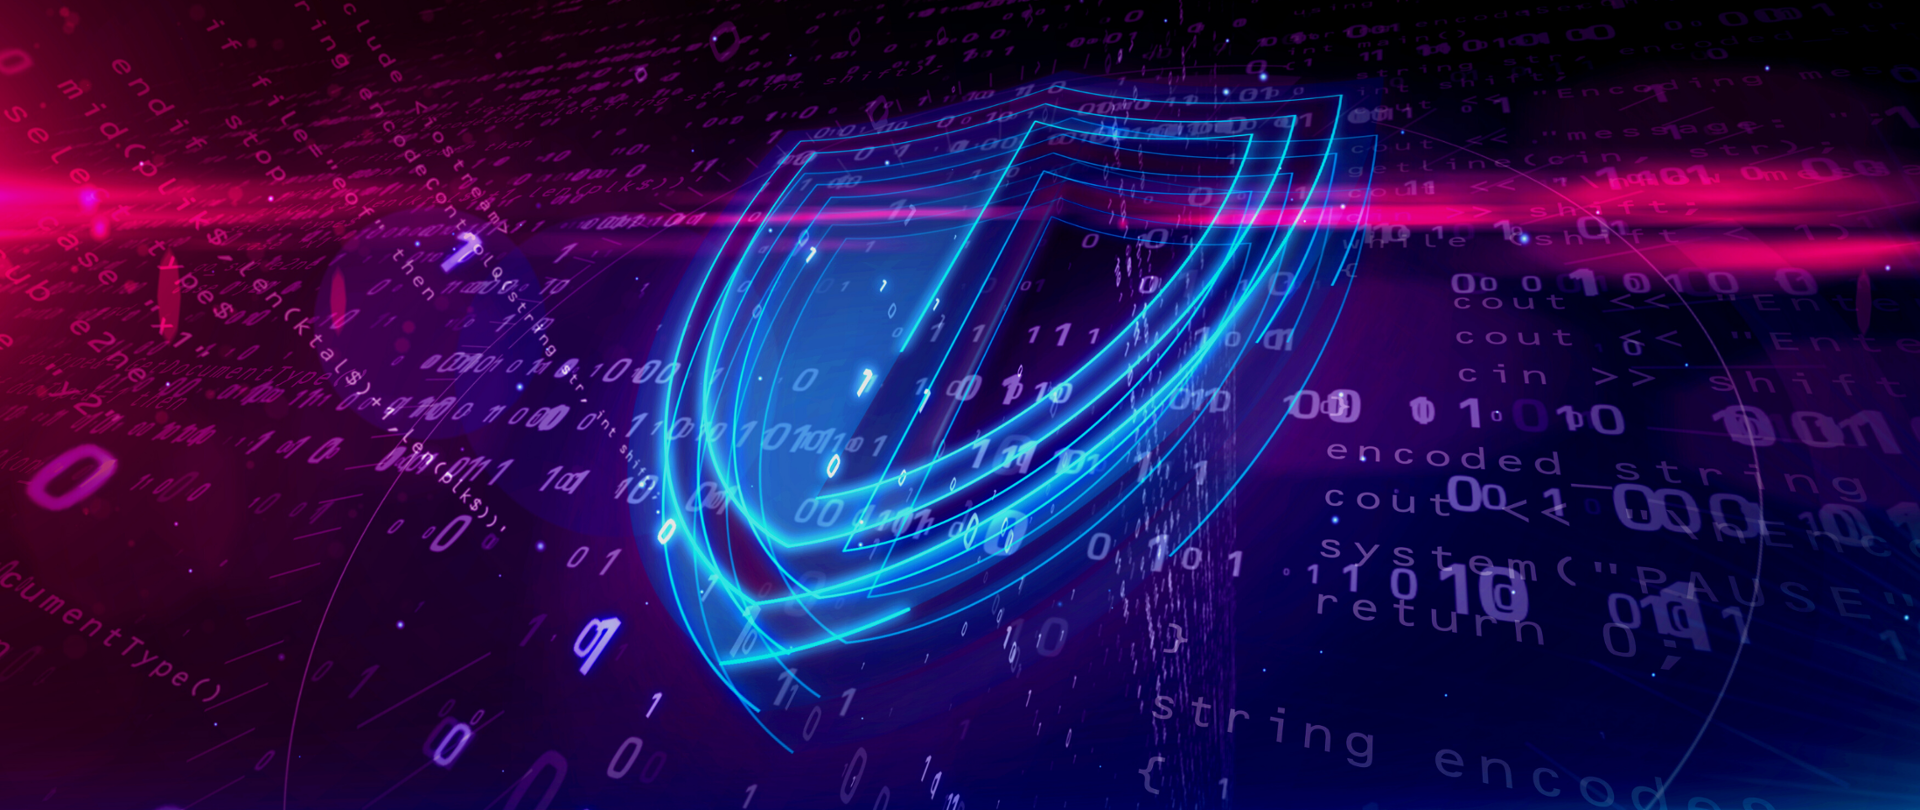 Grafika. Błękitna tarcza symbolizująca cyberbezpieczeństwo. W tle fioletowe cyfry 0 i 1 symbolizujące informatyzację i Internet.